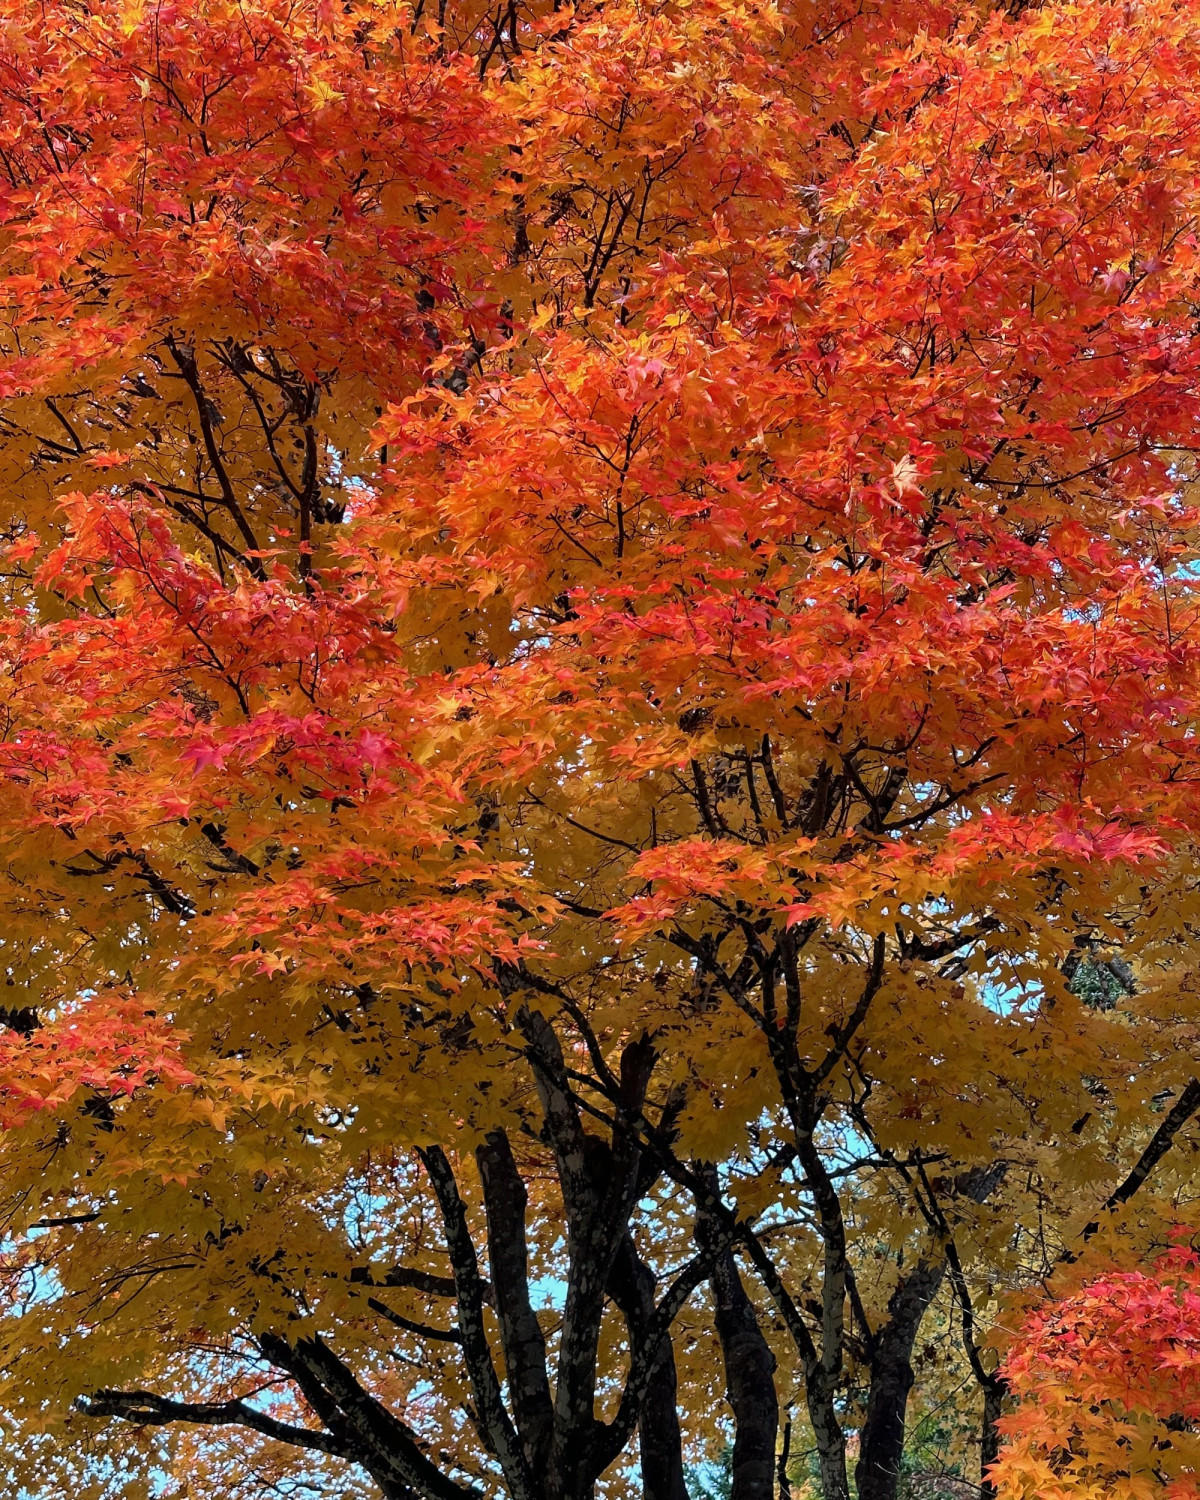 Fall foliage in Sapporo